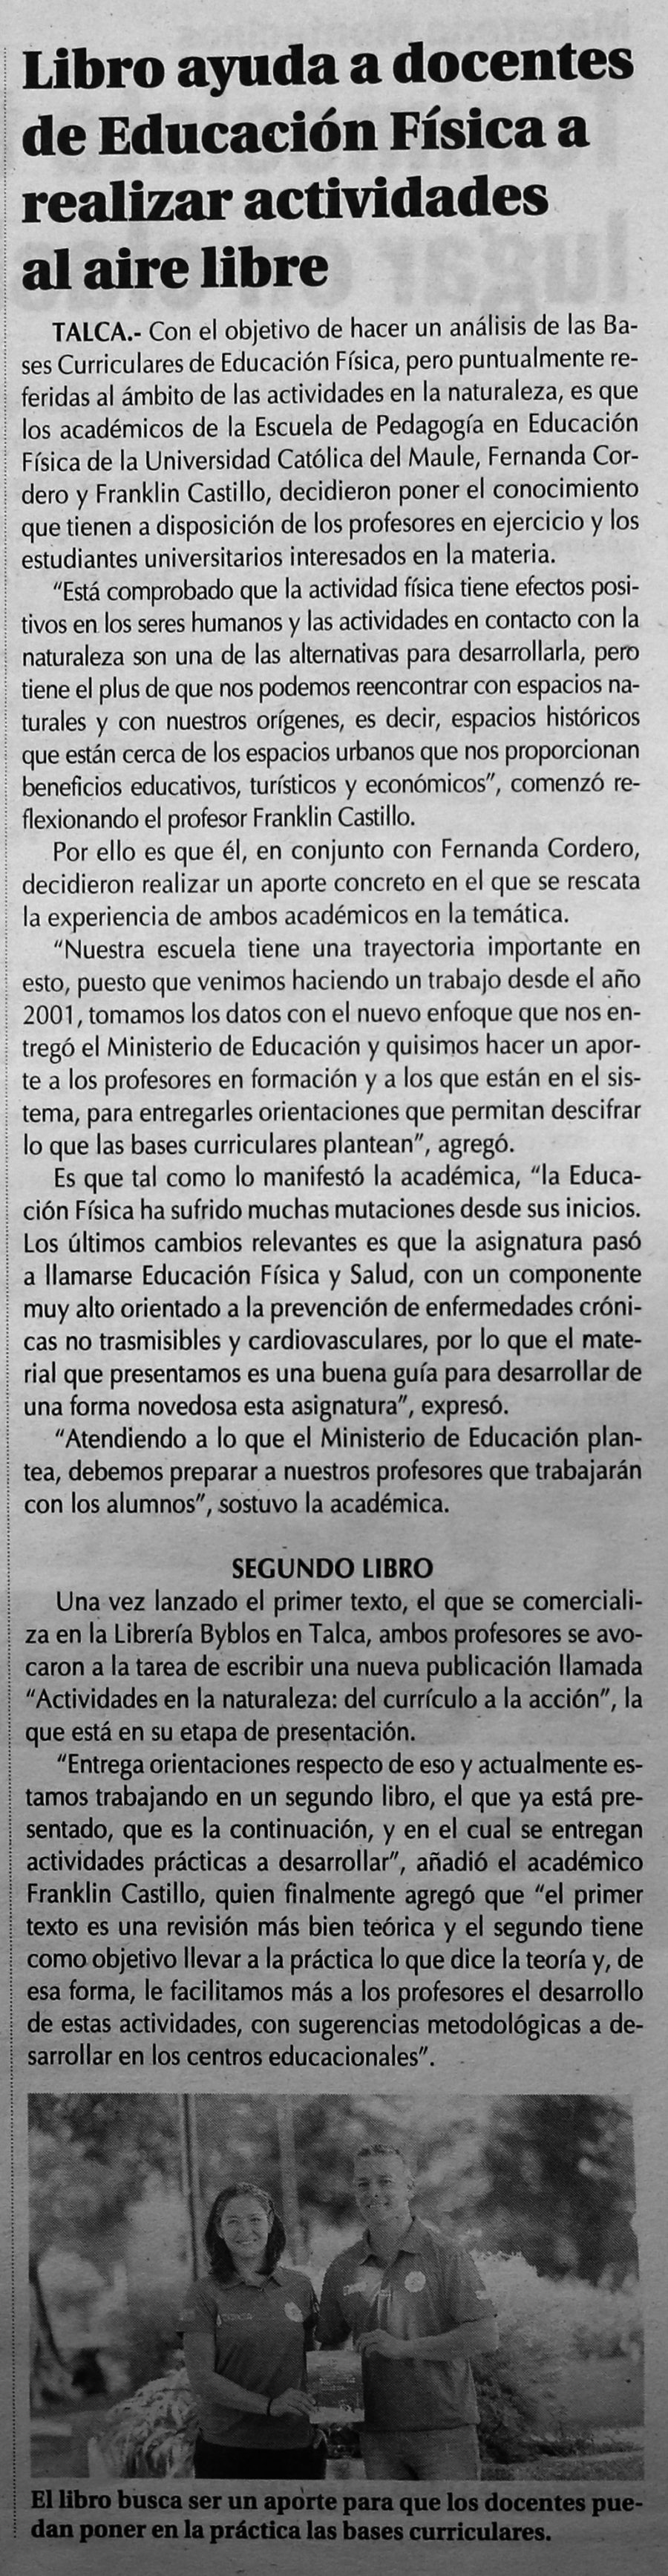 07 de marzo en Diario El Centro: “Libro ayuda a docentes de Educación Física a realizar actividades al aire libre”